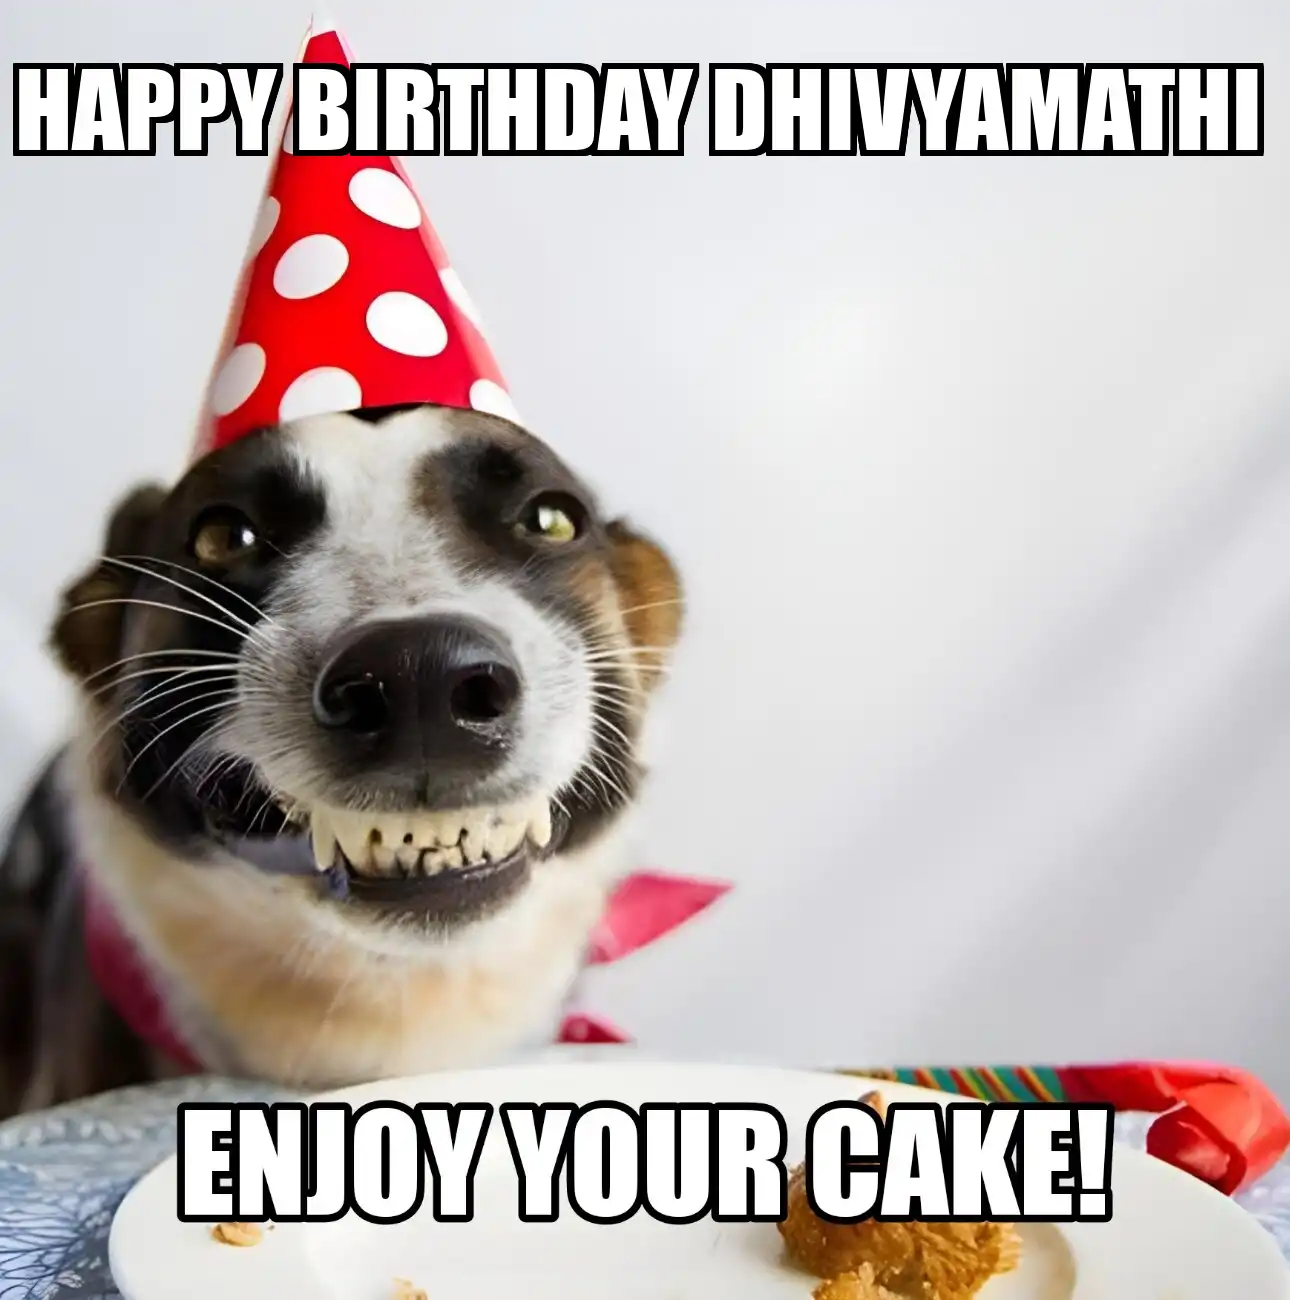 Happy Birthday Dhivyamathi Enjoy Your Cake Dog Meme